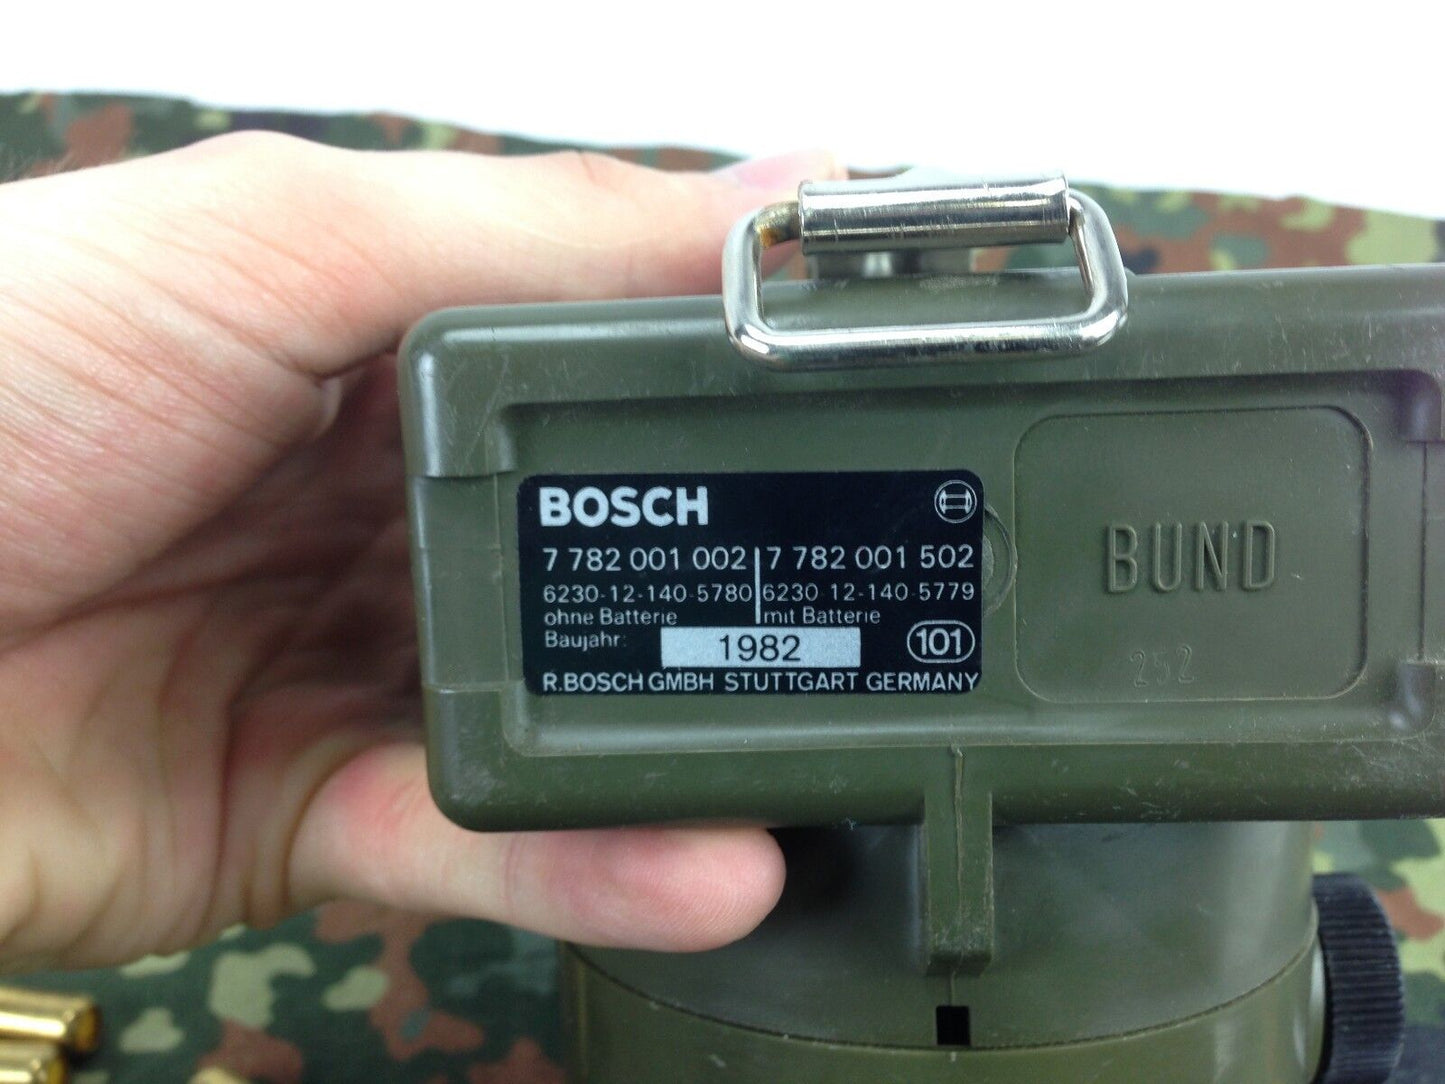 Bosch HPC 9/5, Handlampe, Signalleuchte, Lampe, von Bundeswehr BW Signallampe 